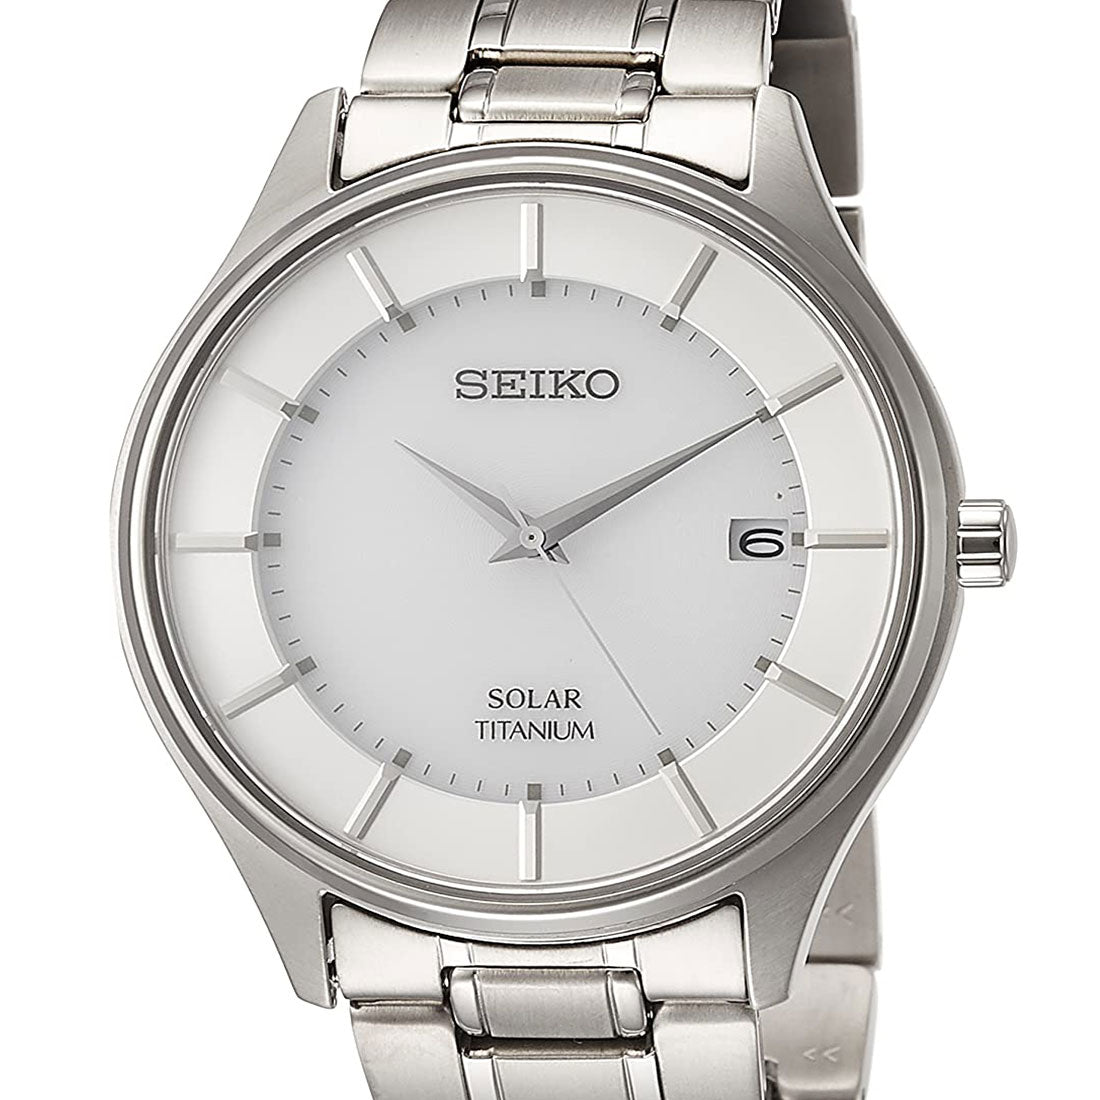 Seiko Selection Titanium JDM Watch SBPX101 -Seiko